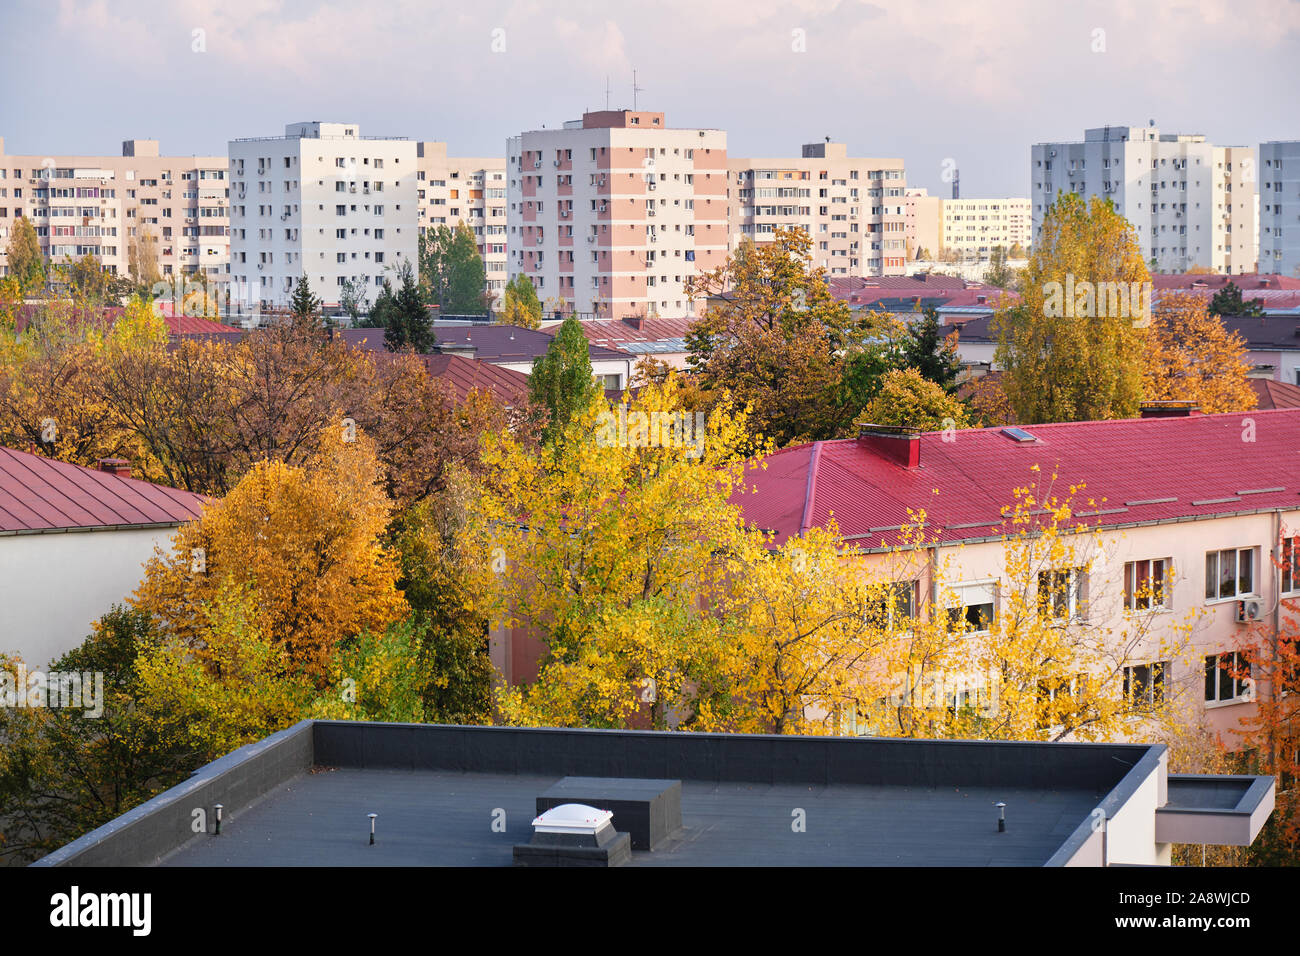 Edifici Urbani in autunno con rinnovato Esterni - Veduta aerea nella città di Bucarest, Romania. Foto Stock